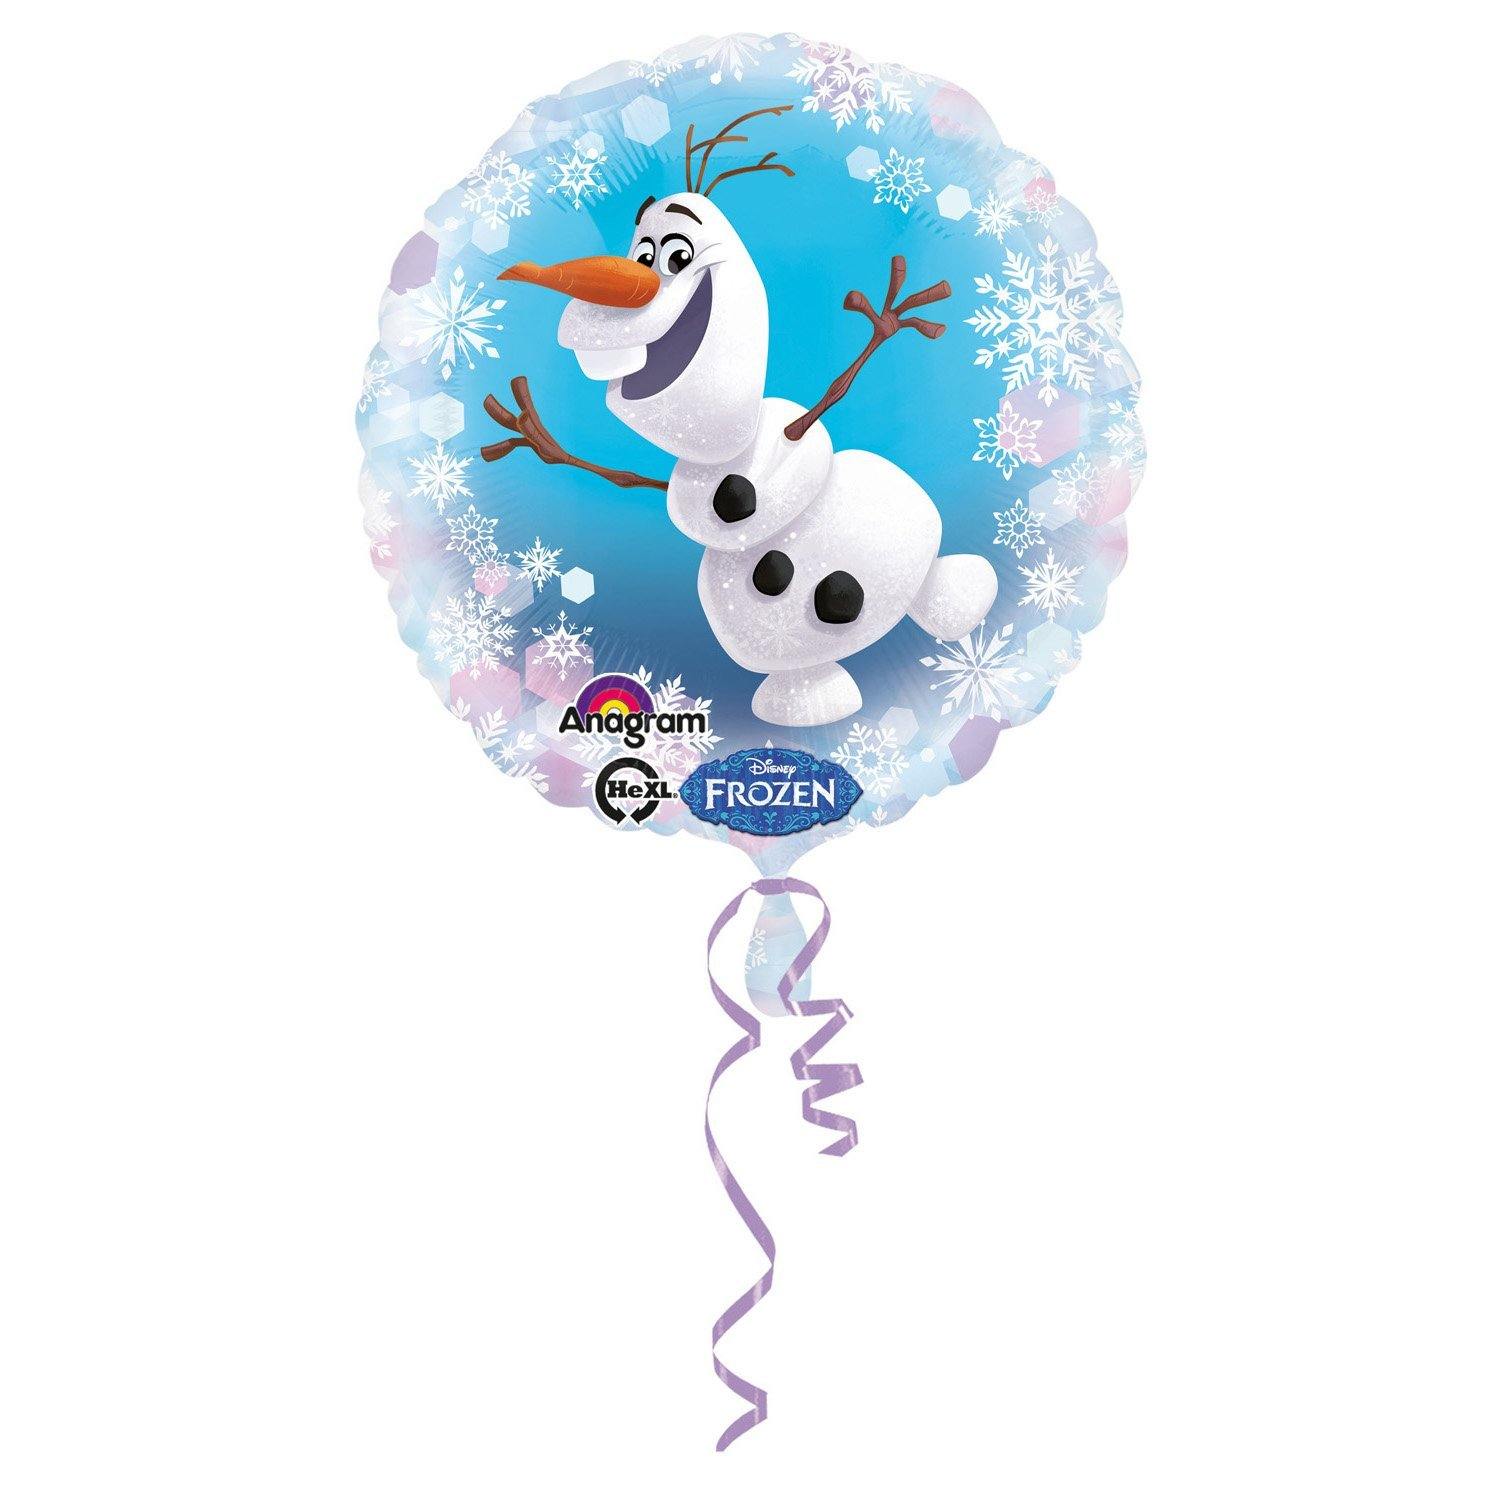 Frozen Olaf ballon 